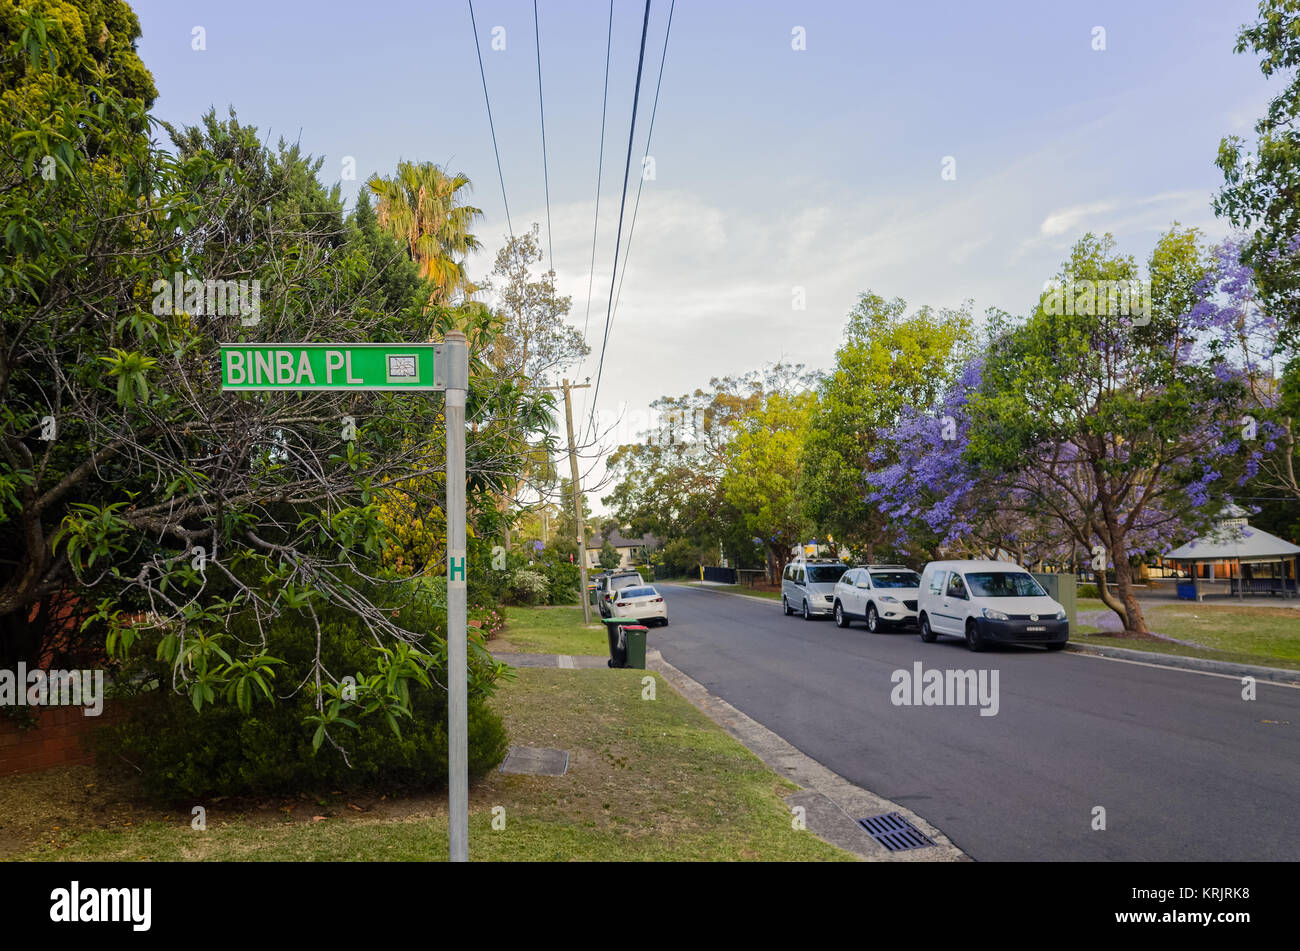 Belle Australie suburbaine avec des voitures de la rue, parc, l'herbe et les arbres. Banlieue de Brookvale dans les plages du nord de Sydney, Nouvelle Galles du Sud, Australie Banque D'Images